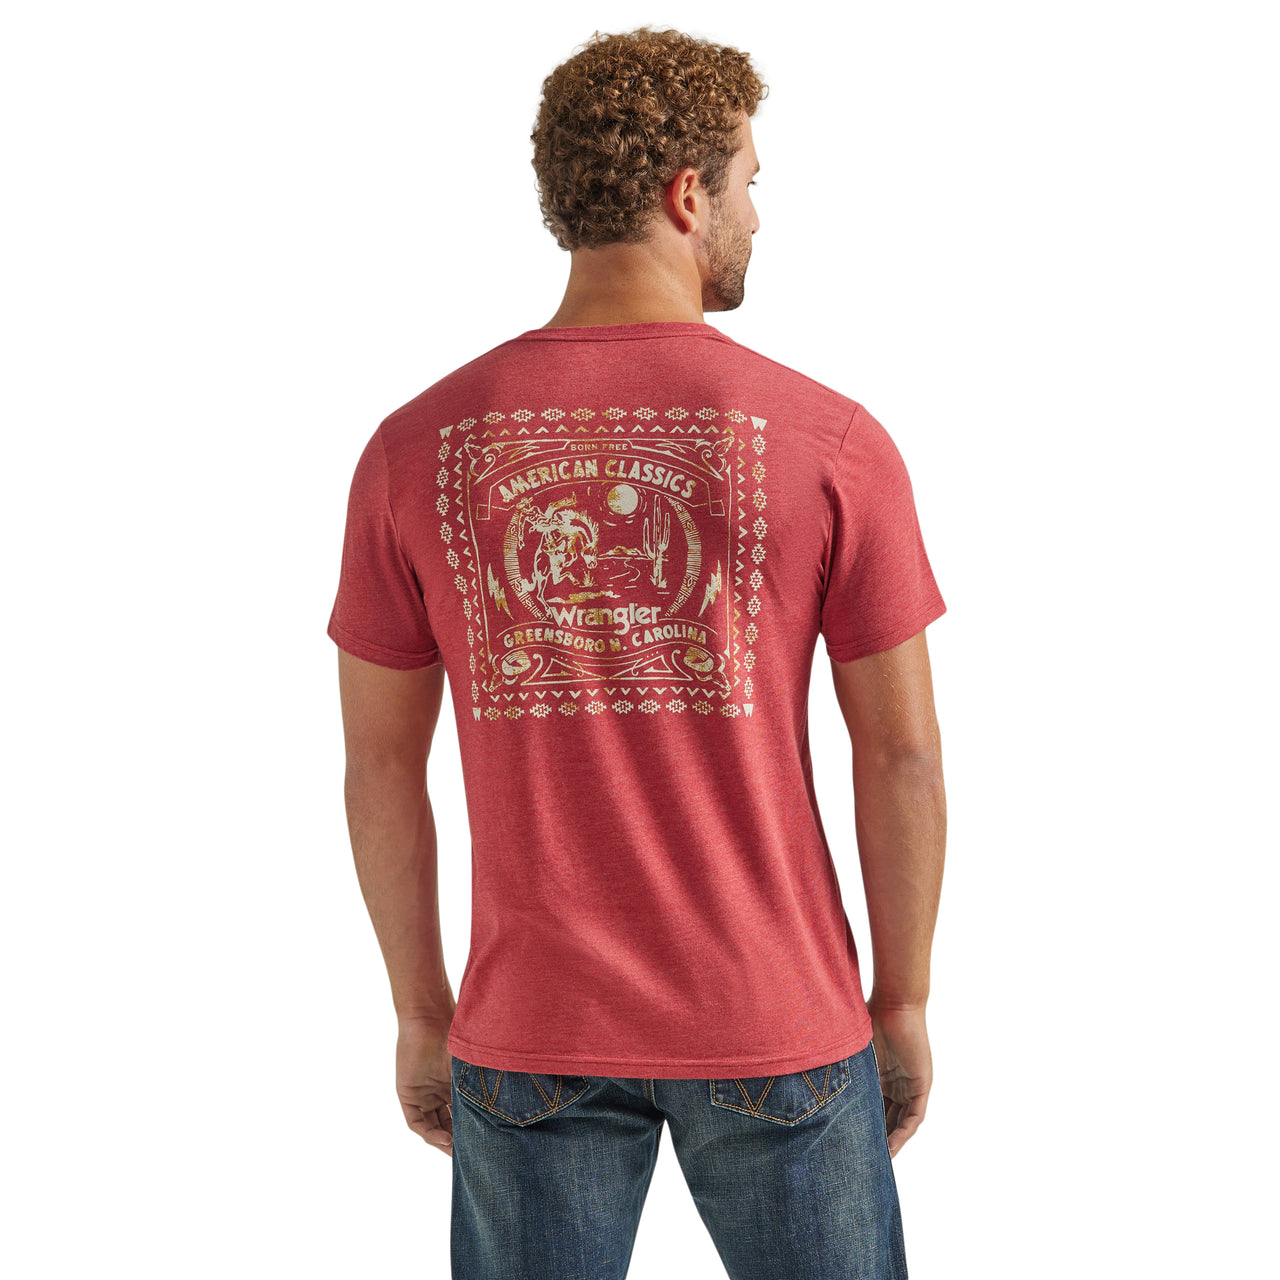 Wrangler Men's Short Sleeve T-Shirt - Heather Red